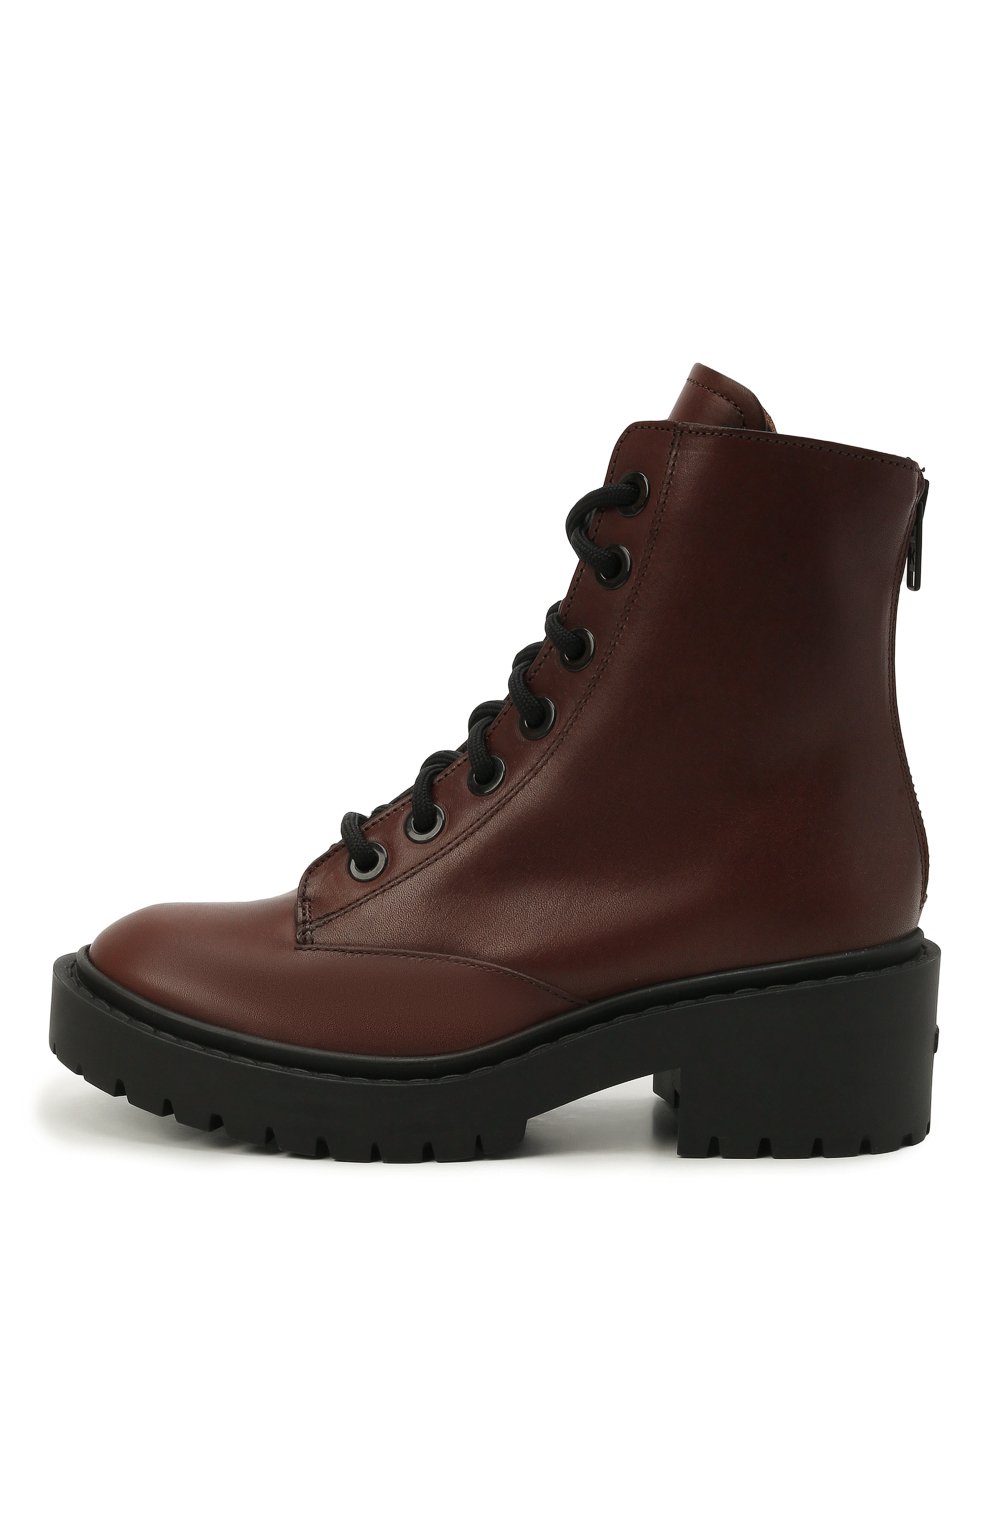 Кожаные ботинки Pike Kenzo FB62BT341L55, цвет коричневый, размер 38 - фото 2